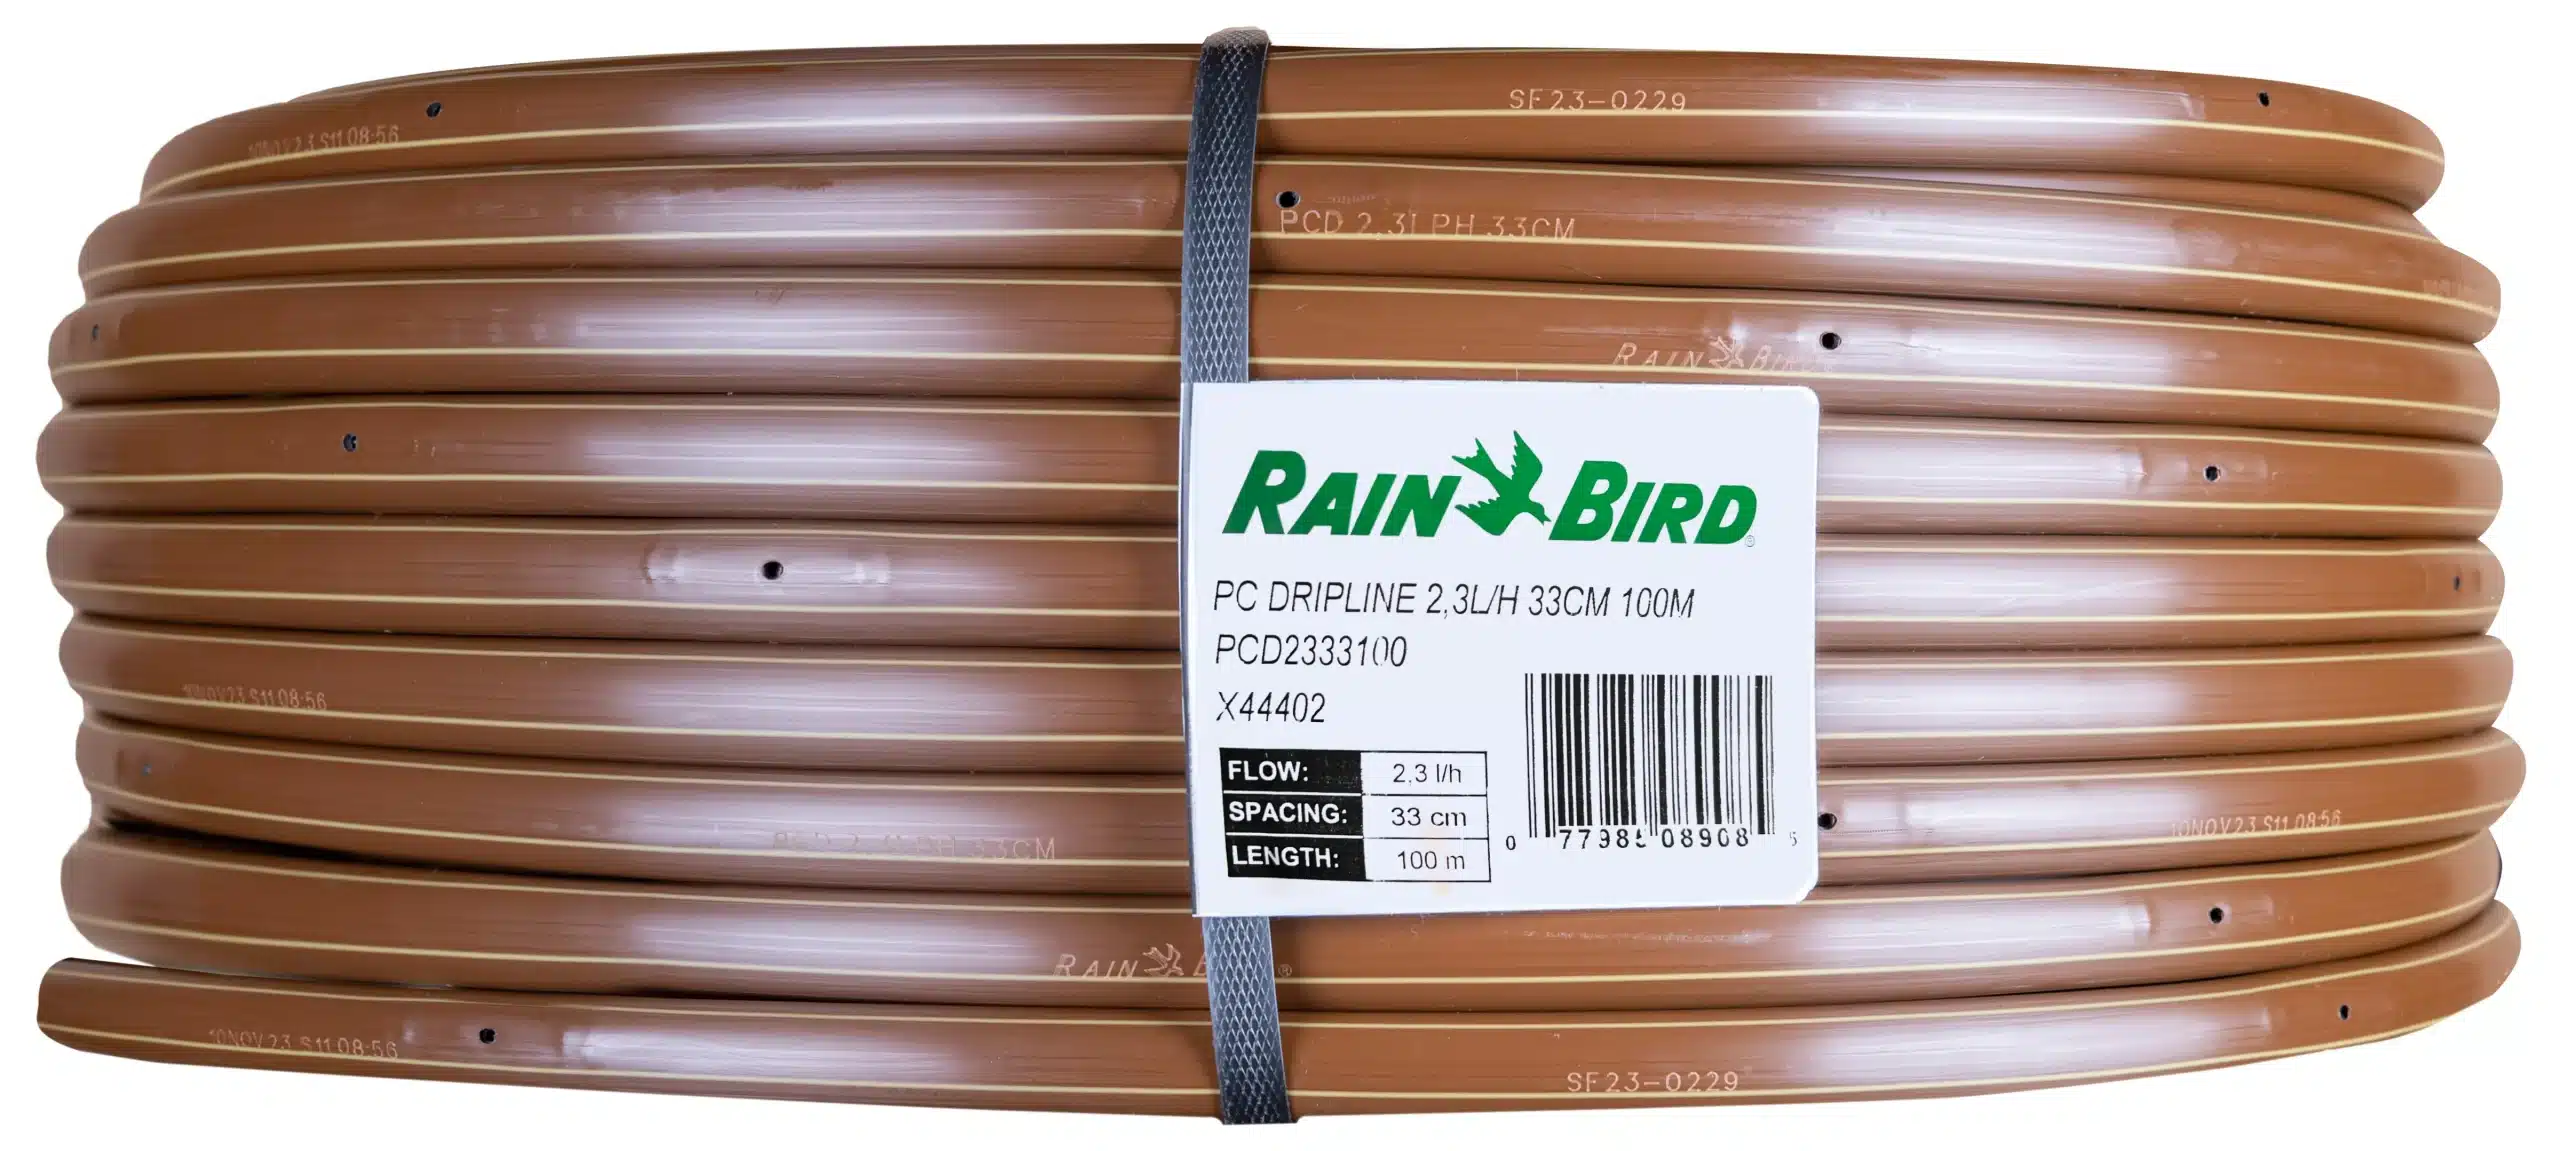 rain-bird-tropfrohr-pcd-23l-rolle-100m-x44402